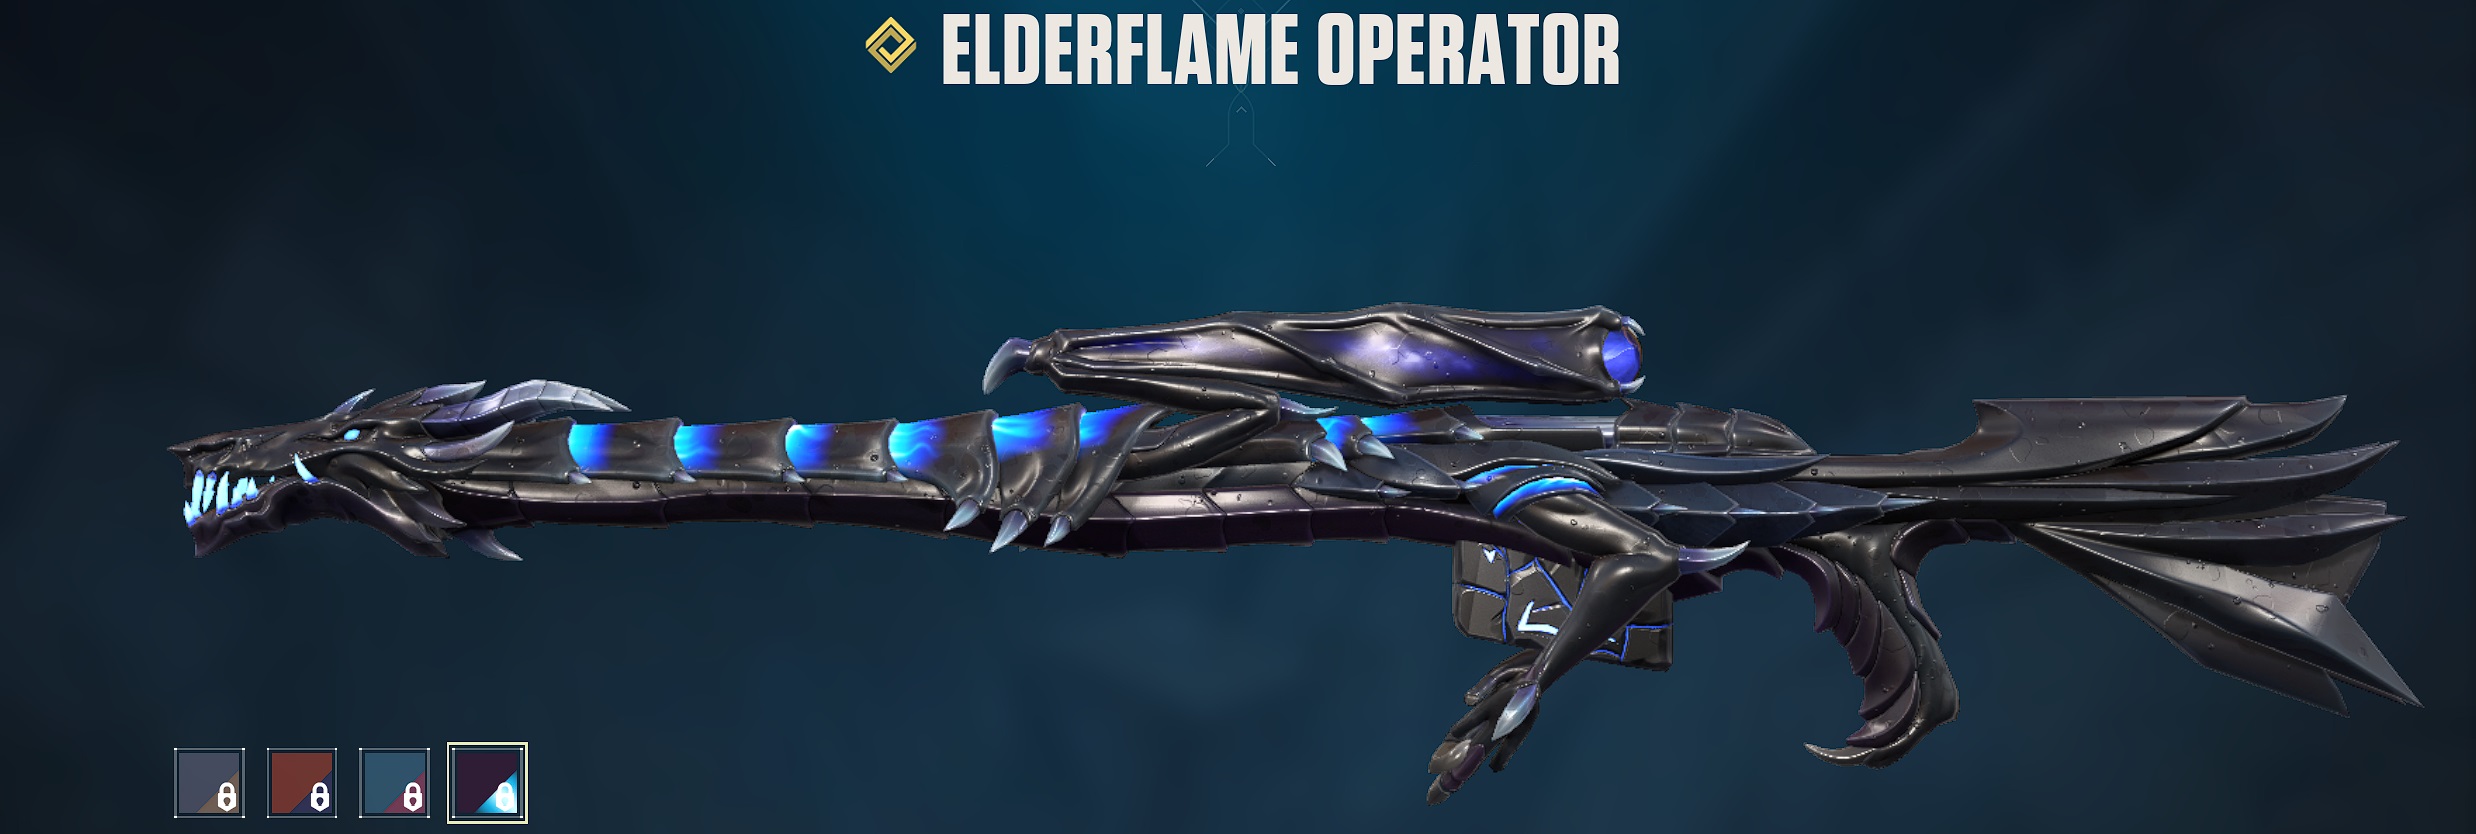 Elderflame Operator -Screenshot